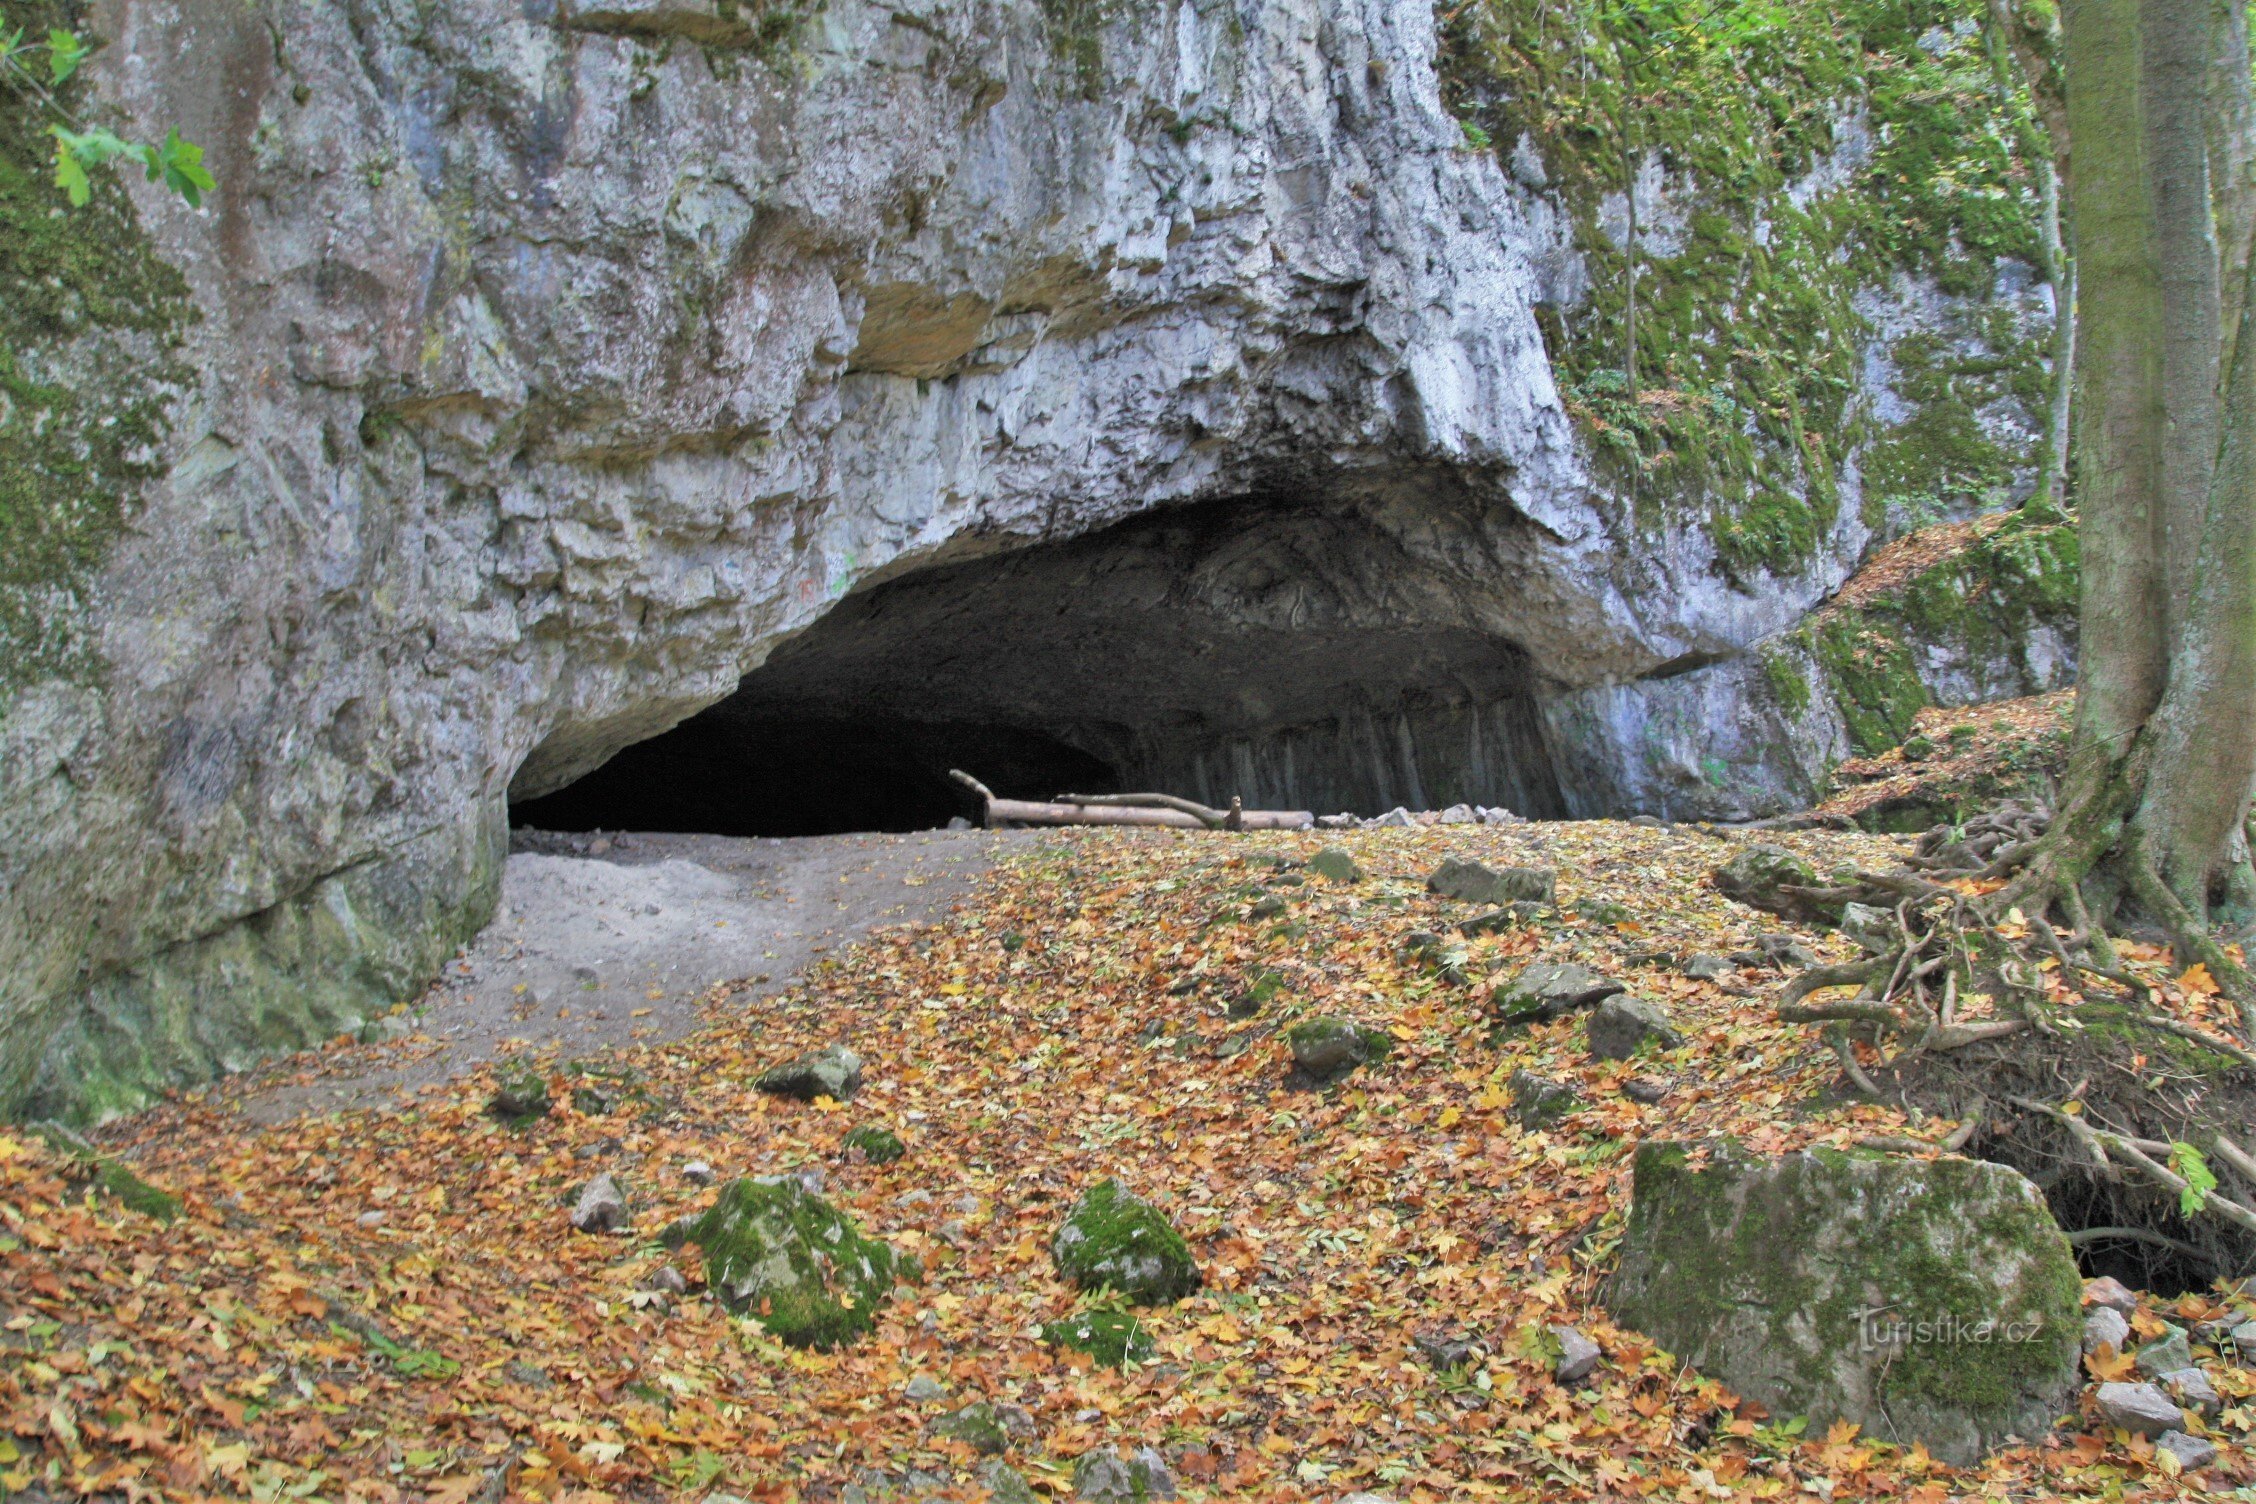 Am Abhang im Karstteil des Baches befindet sich auch die bekannte Pekárna-Höhle